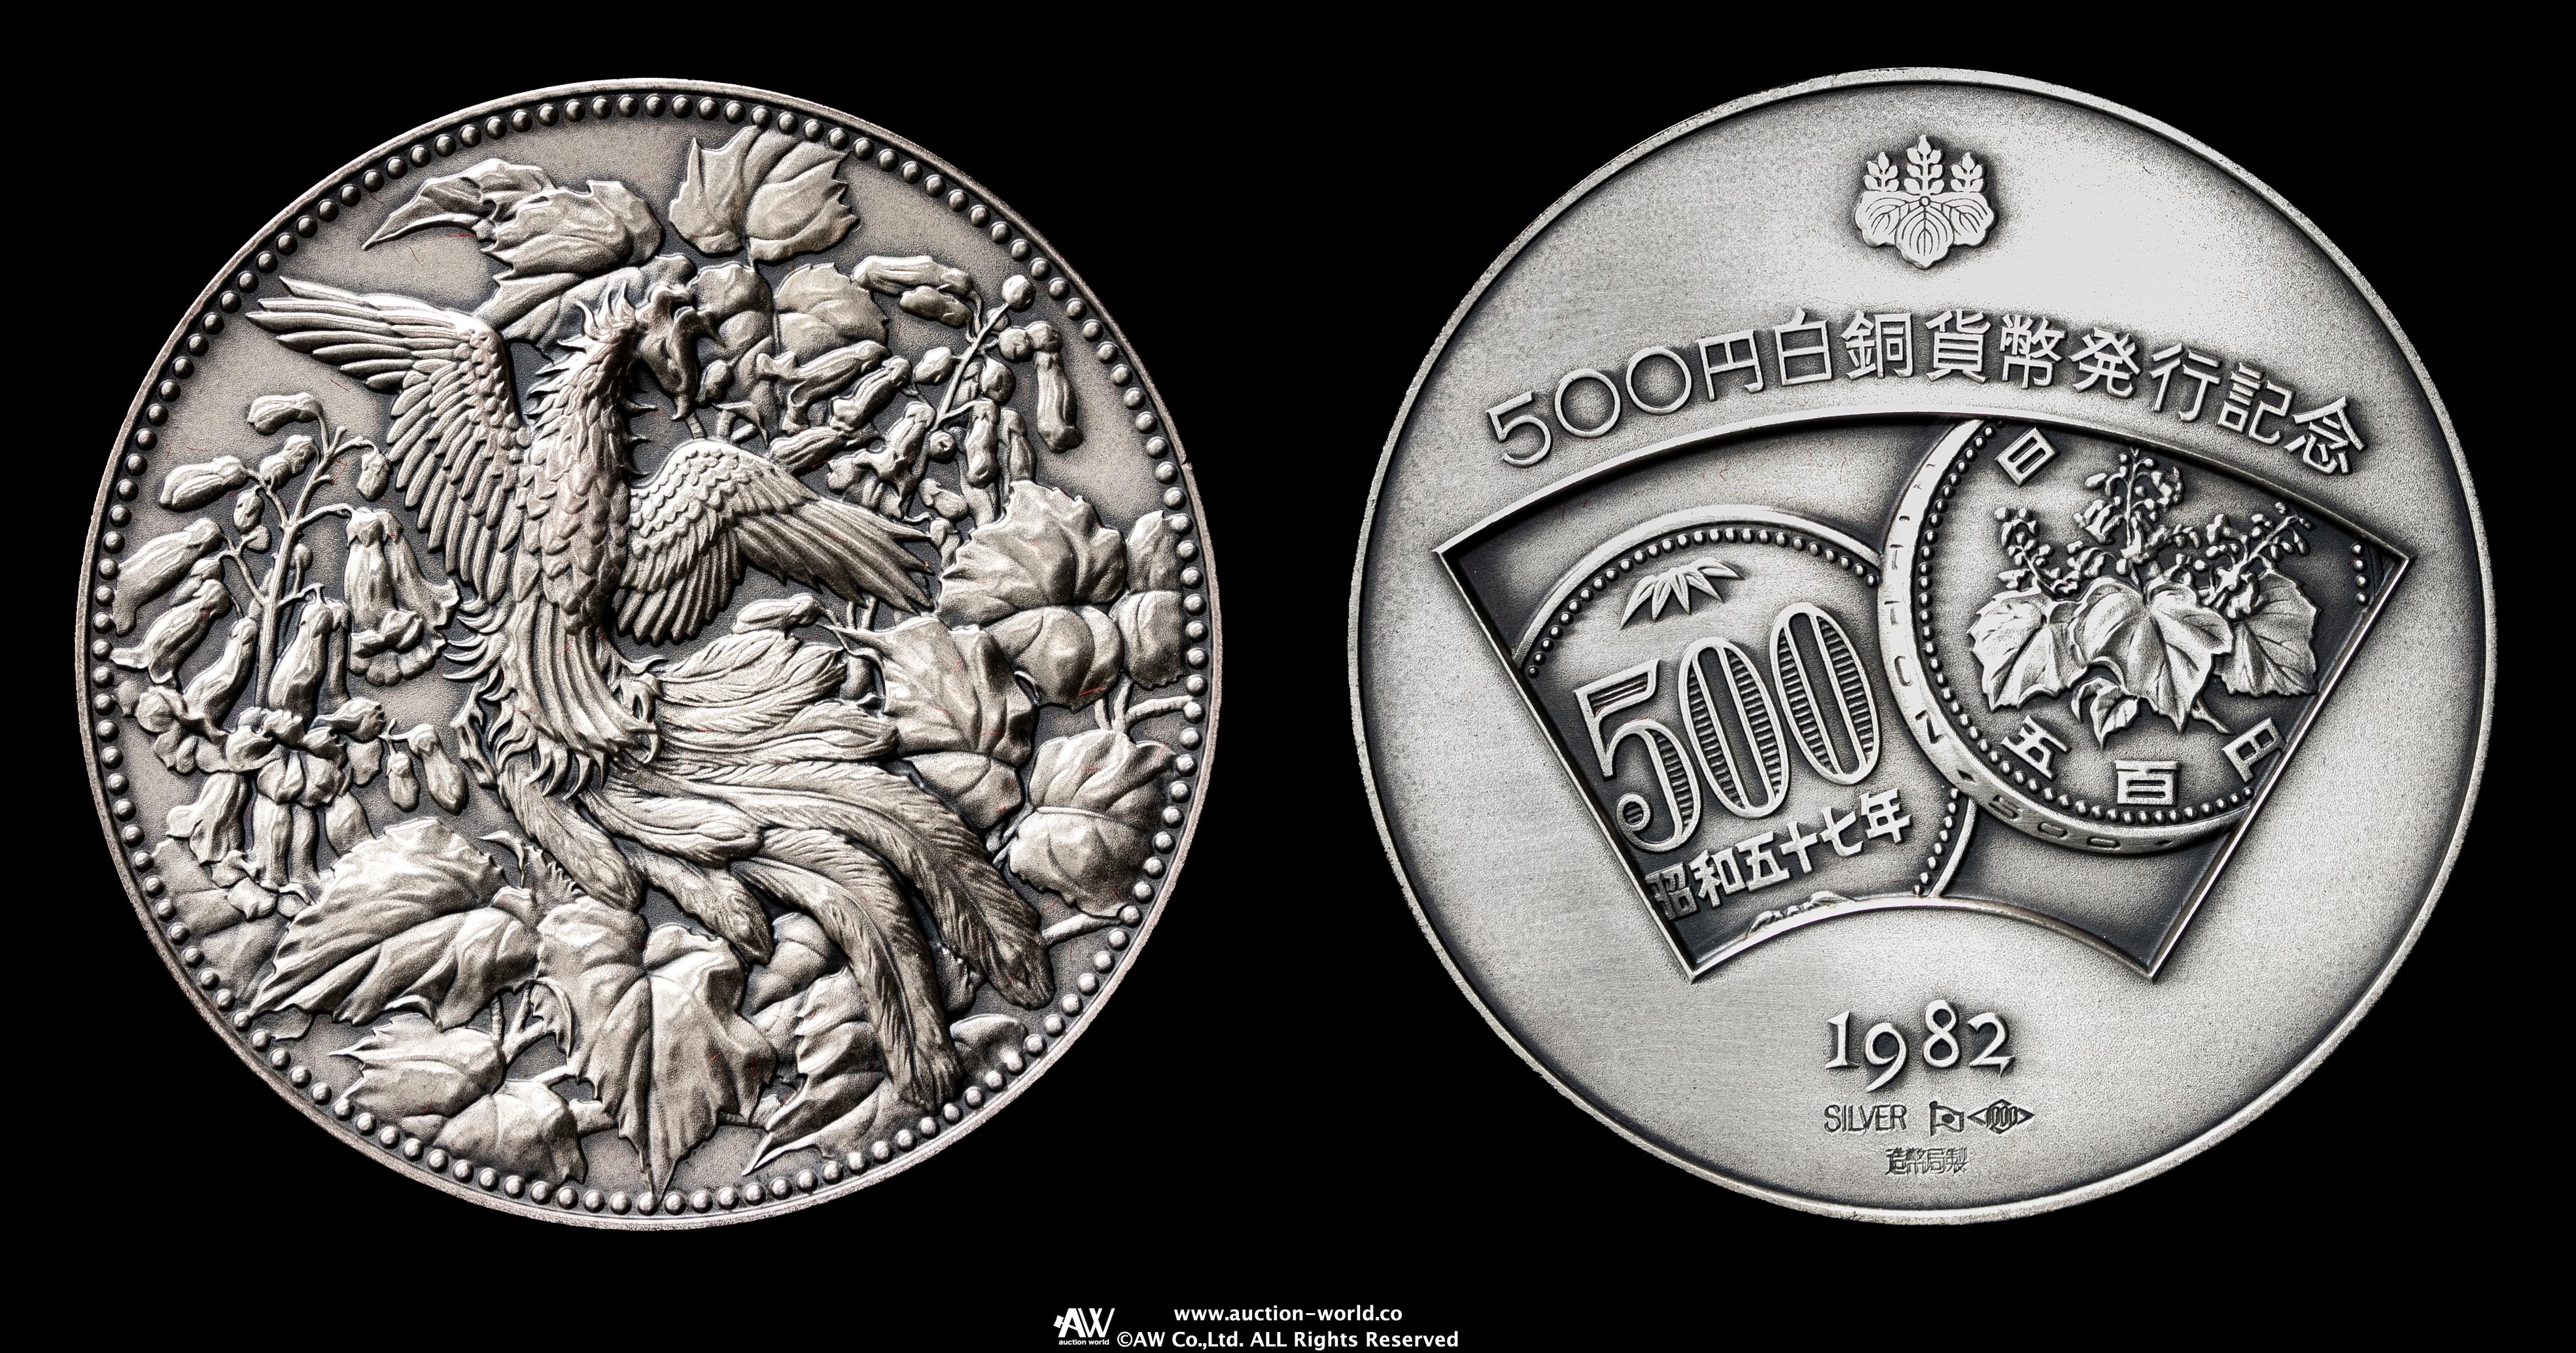 限时竞拍,AR Medal 1982 500円白銅貨幣発行記念オリジナルケース付き